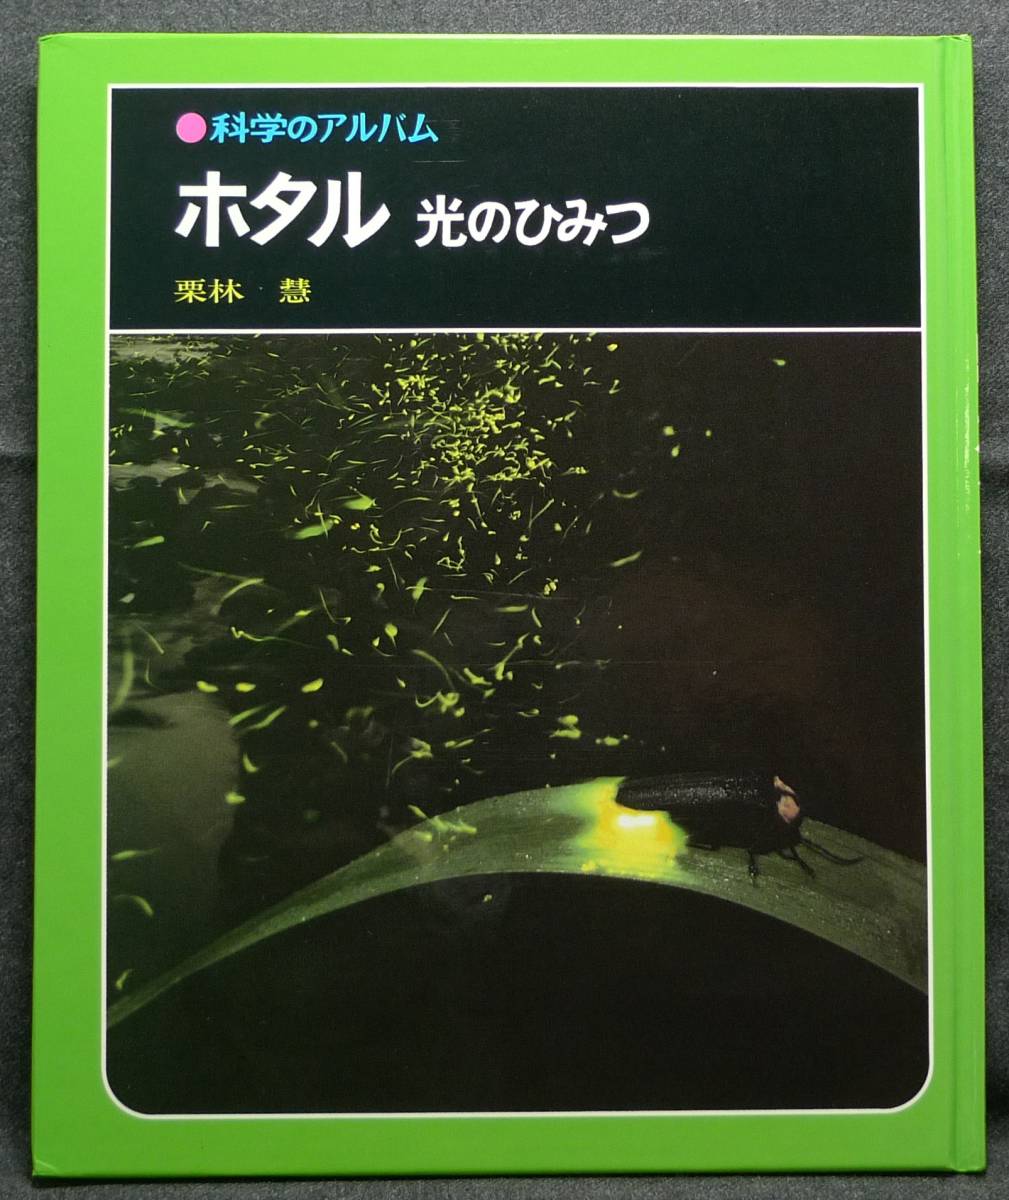 [ супер редкий ][. имеется, прекрасный товар ] старая книга ho taru свет. секрет наука. альбом 68 автор : Kuribayashi .( АО )... книжный магазин 